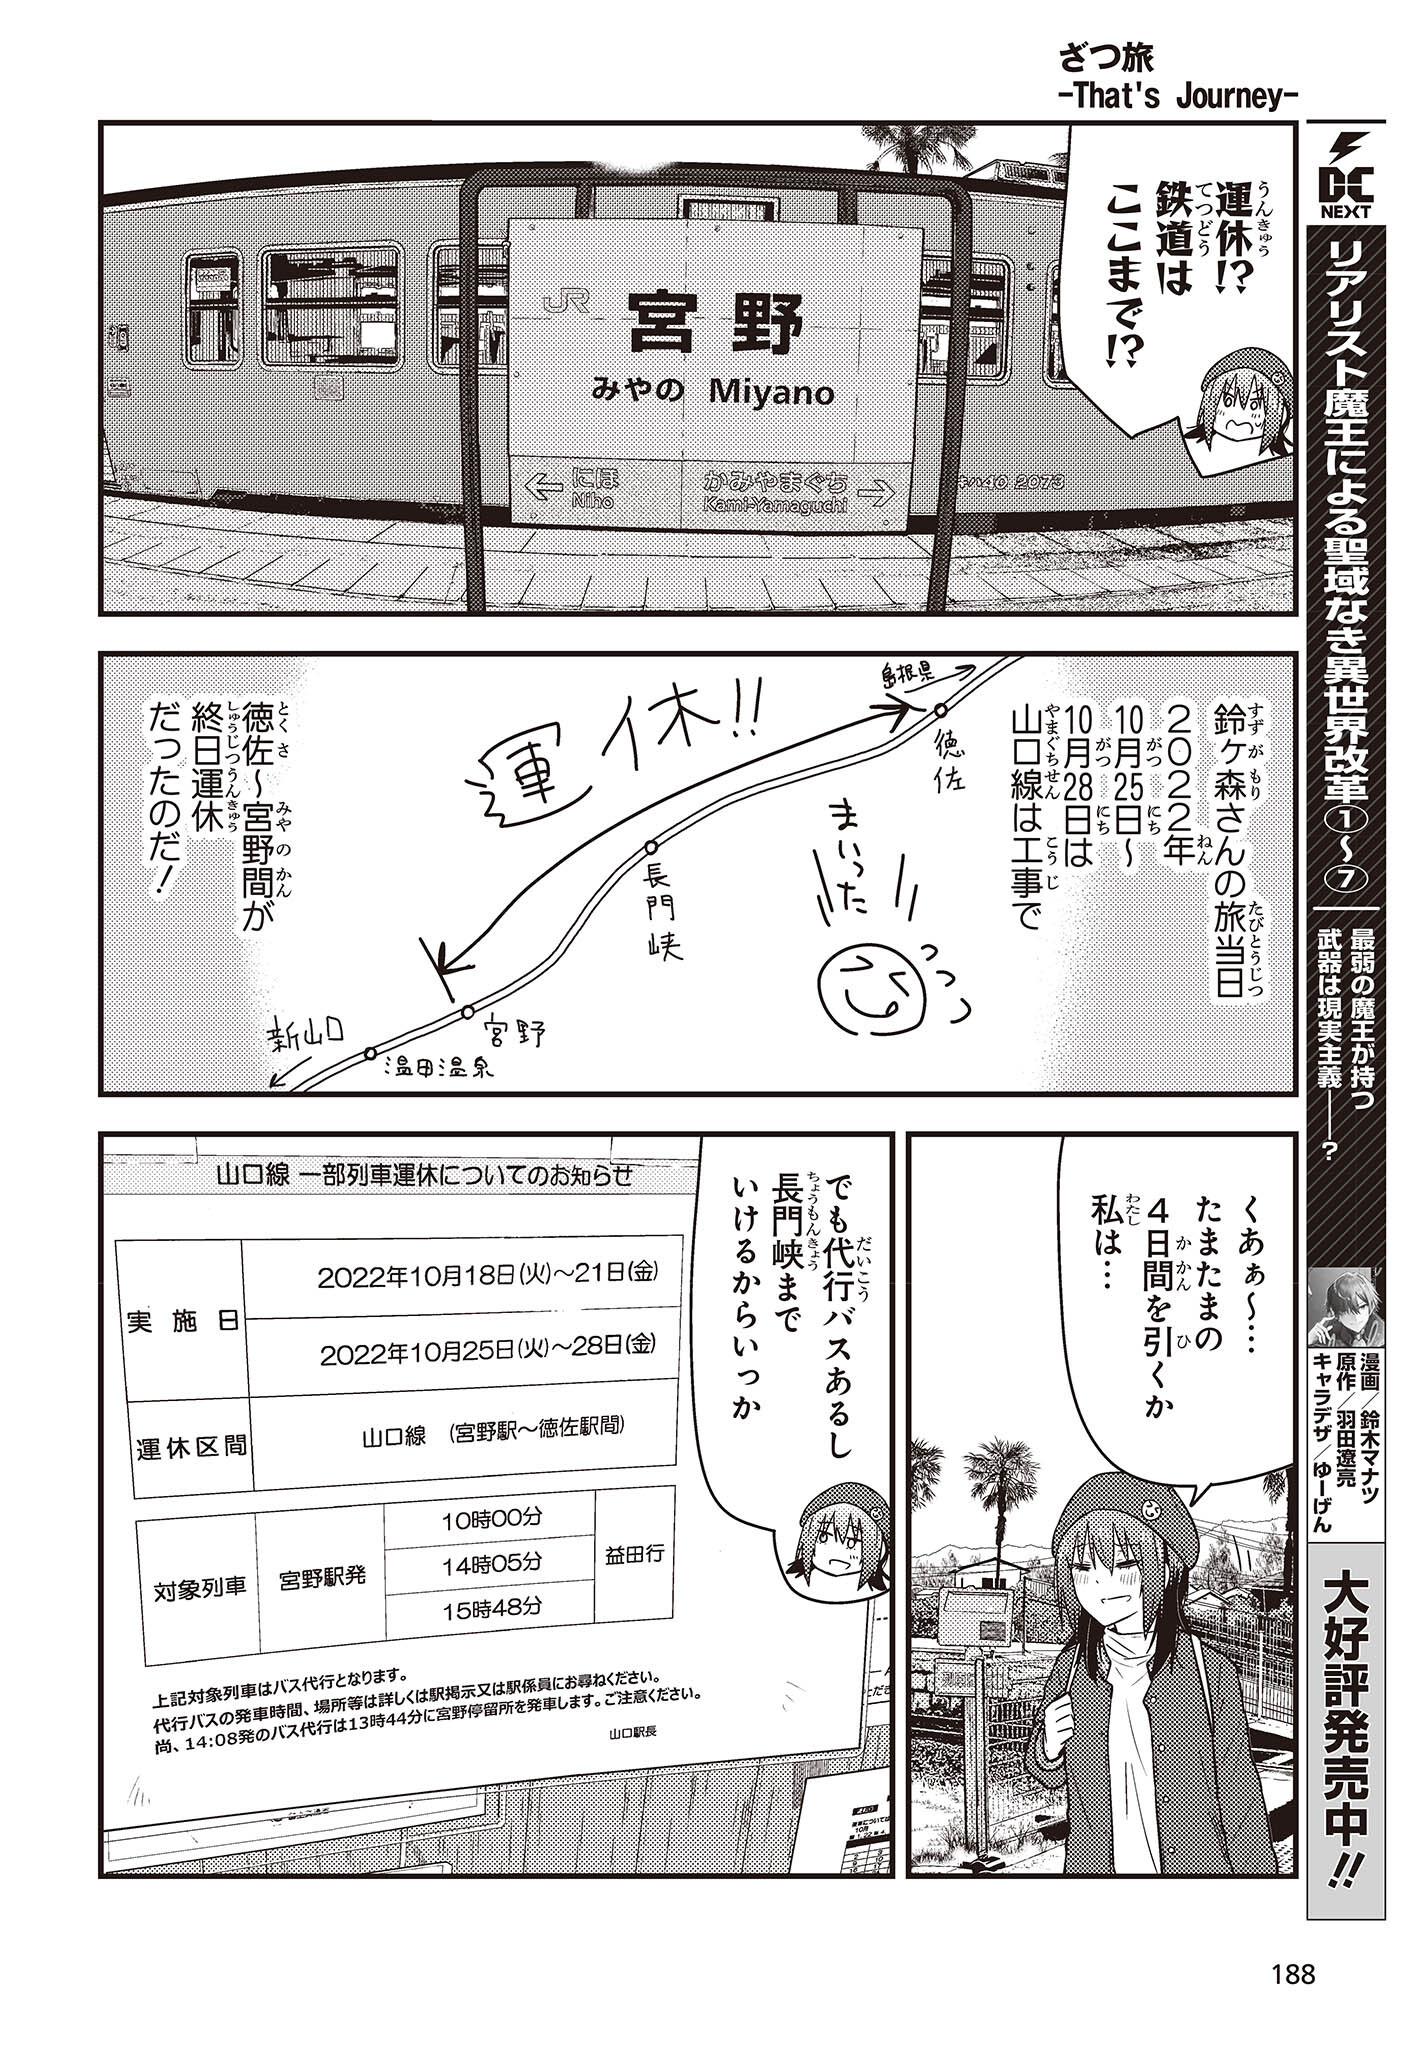 ざつ旅-That’s Journey- 第29話 - Page 16